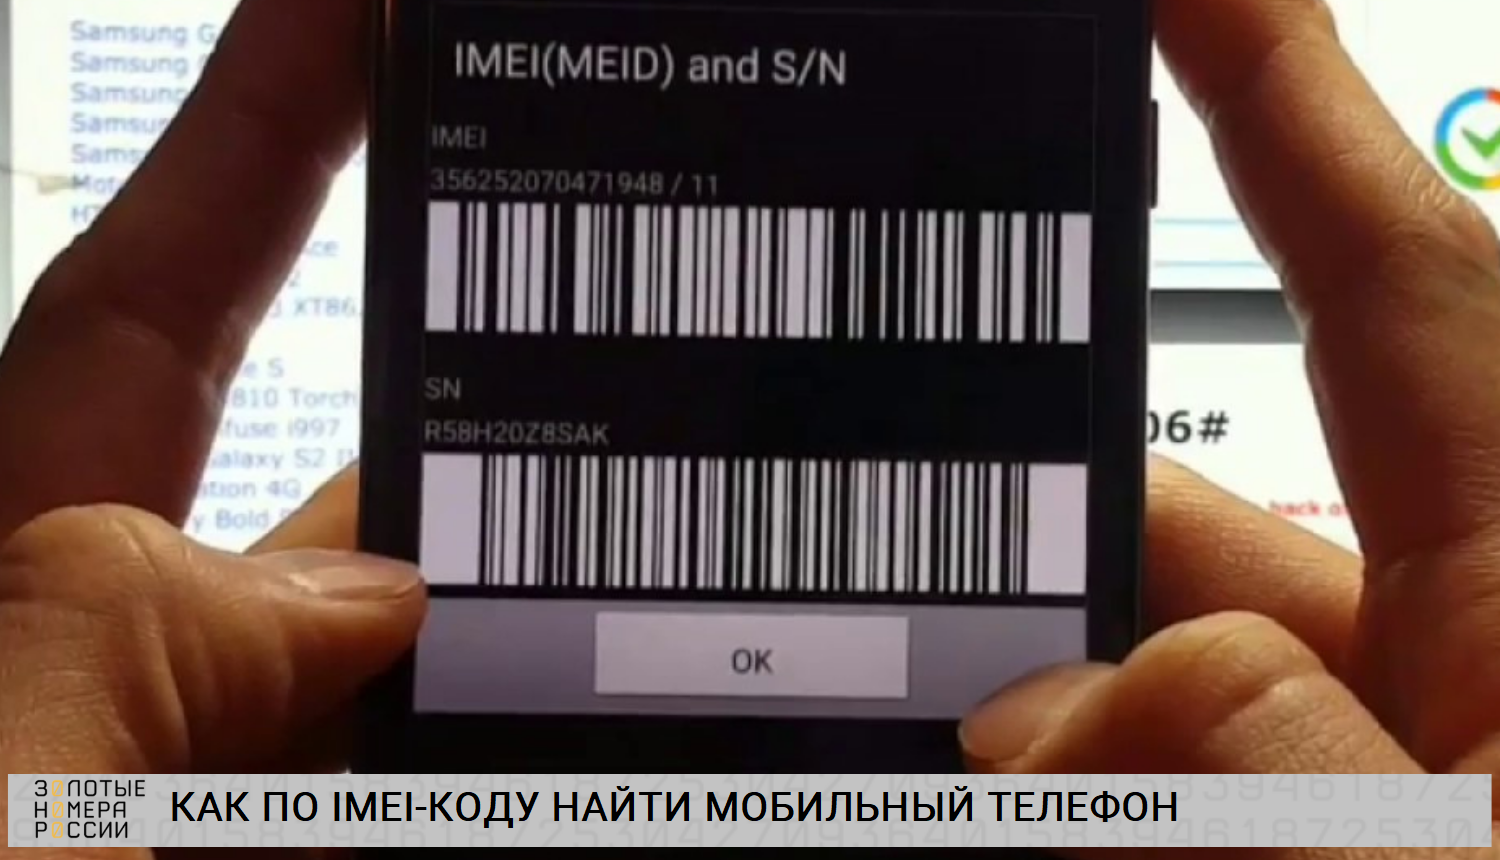 Как по IMEI-коды найти мобильный телефон